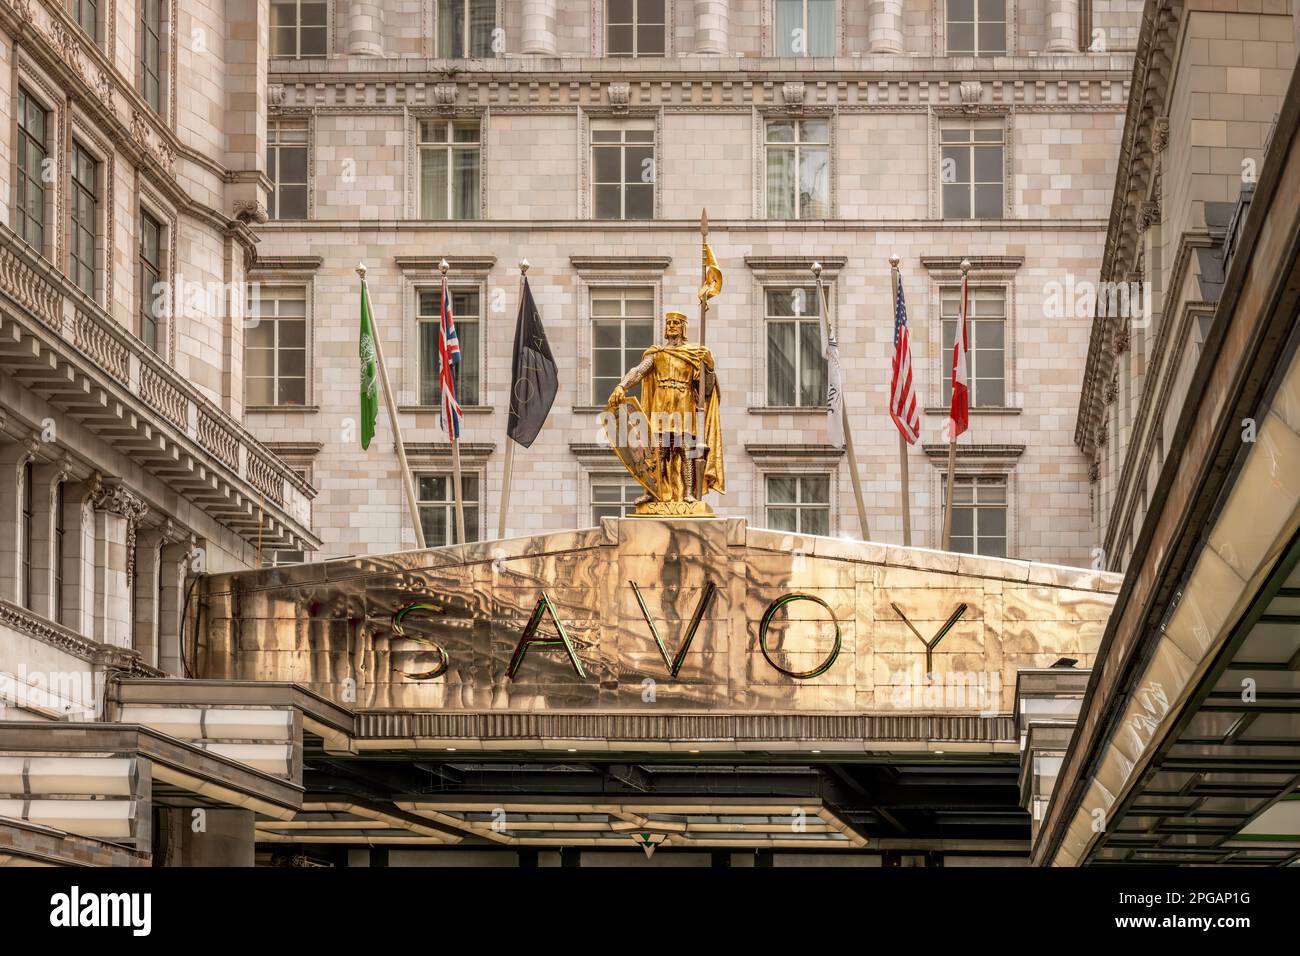 Situado en The Strand en la ciudad de Westminster, el lujoso Savoy Hotel tiene una entrada impresionante para igualar su reputación. El prestigioso Londres h Foto de stock